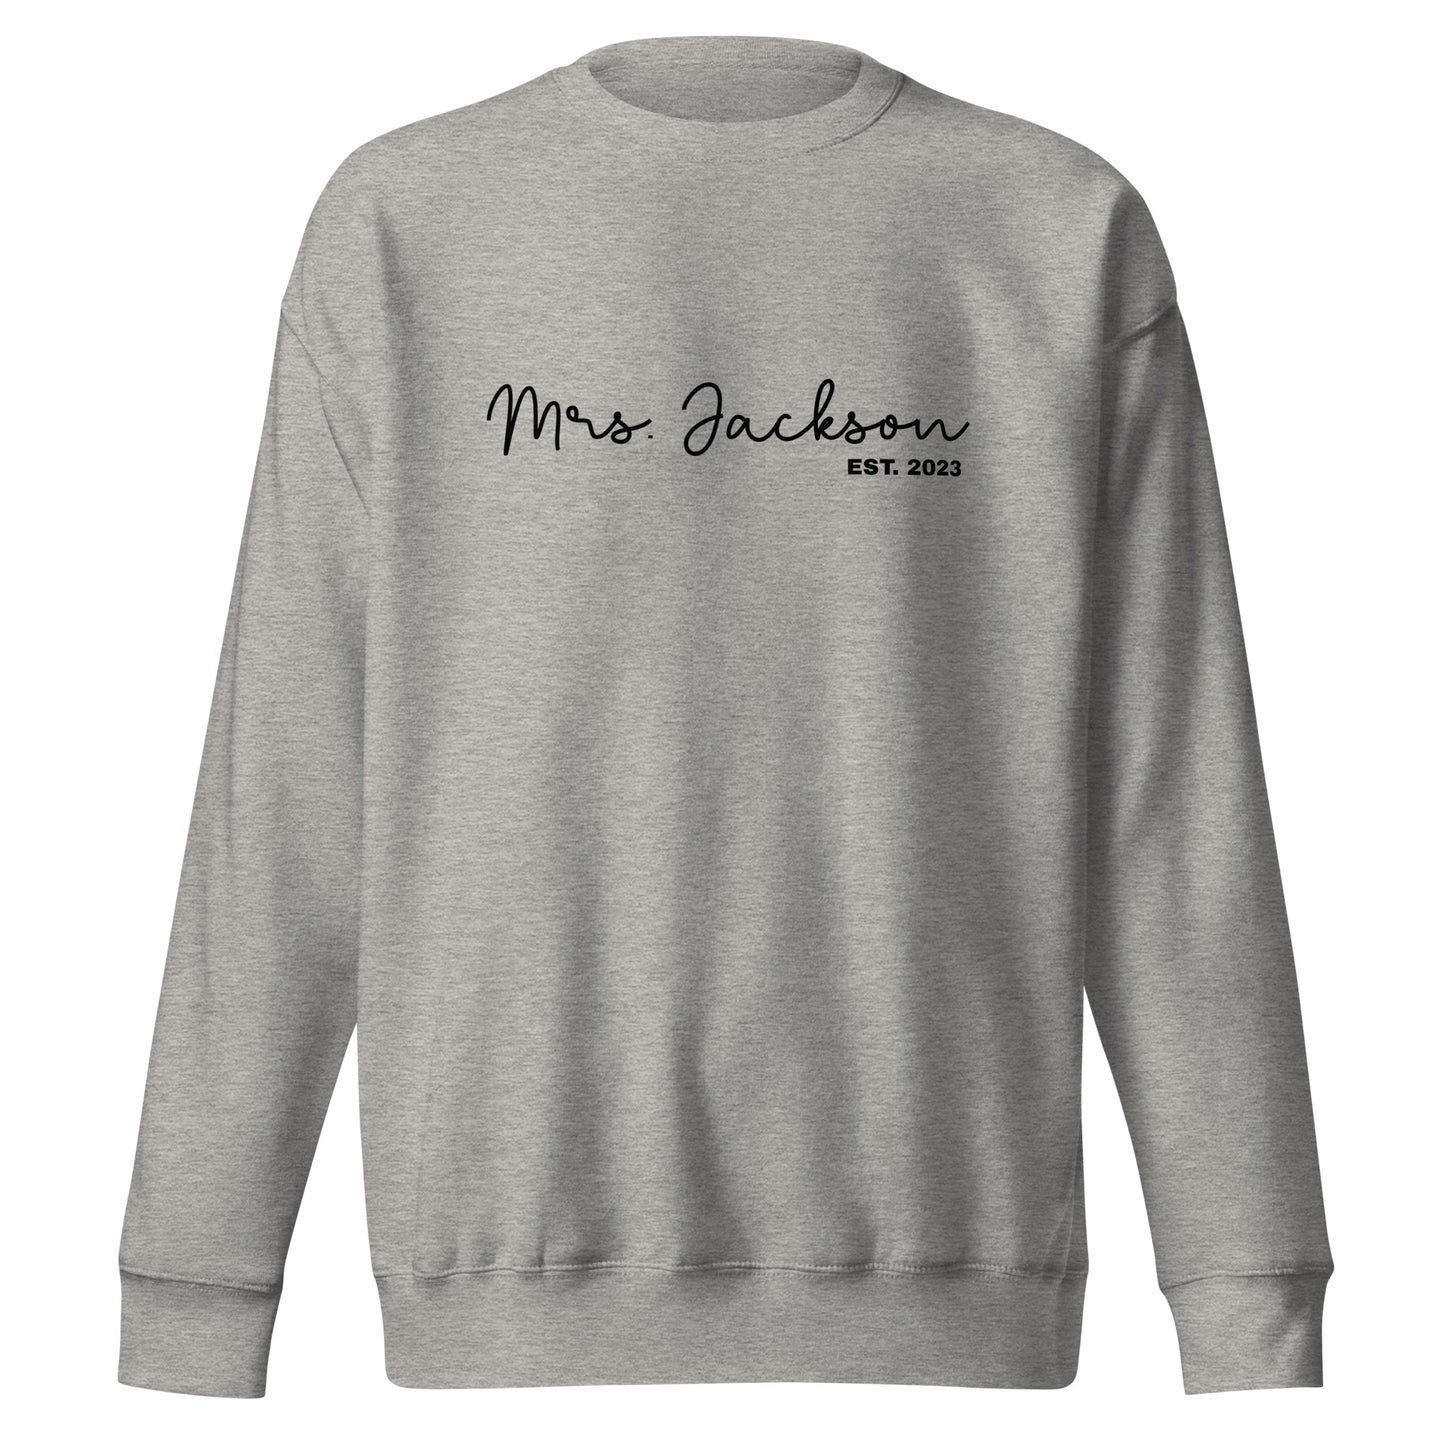 Mrs. Sweatshirt Premium Sweatshirt